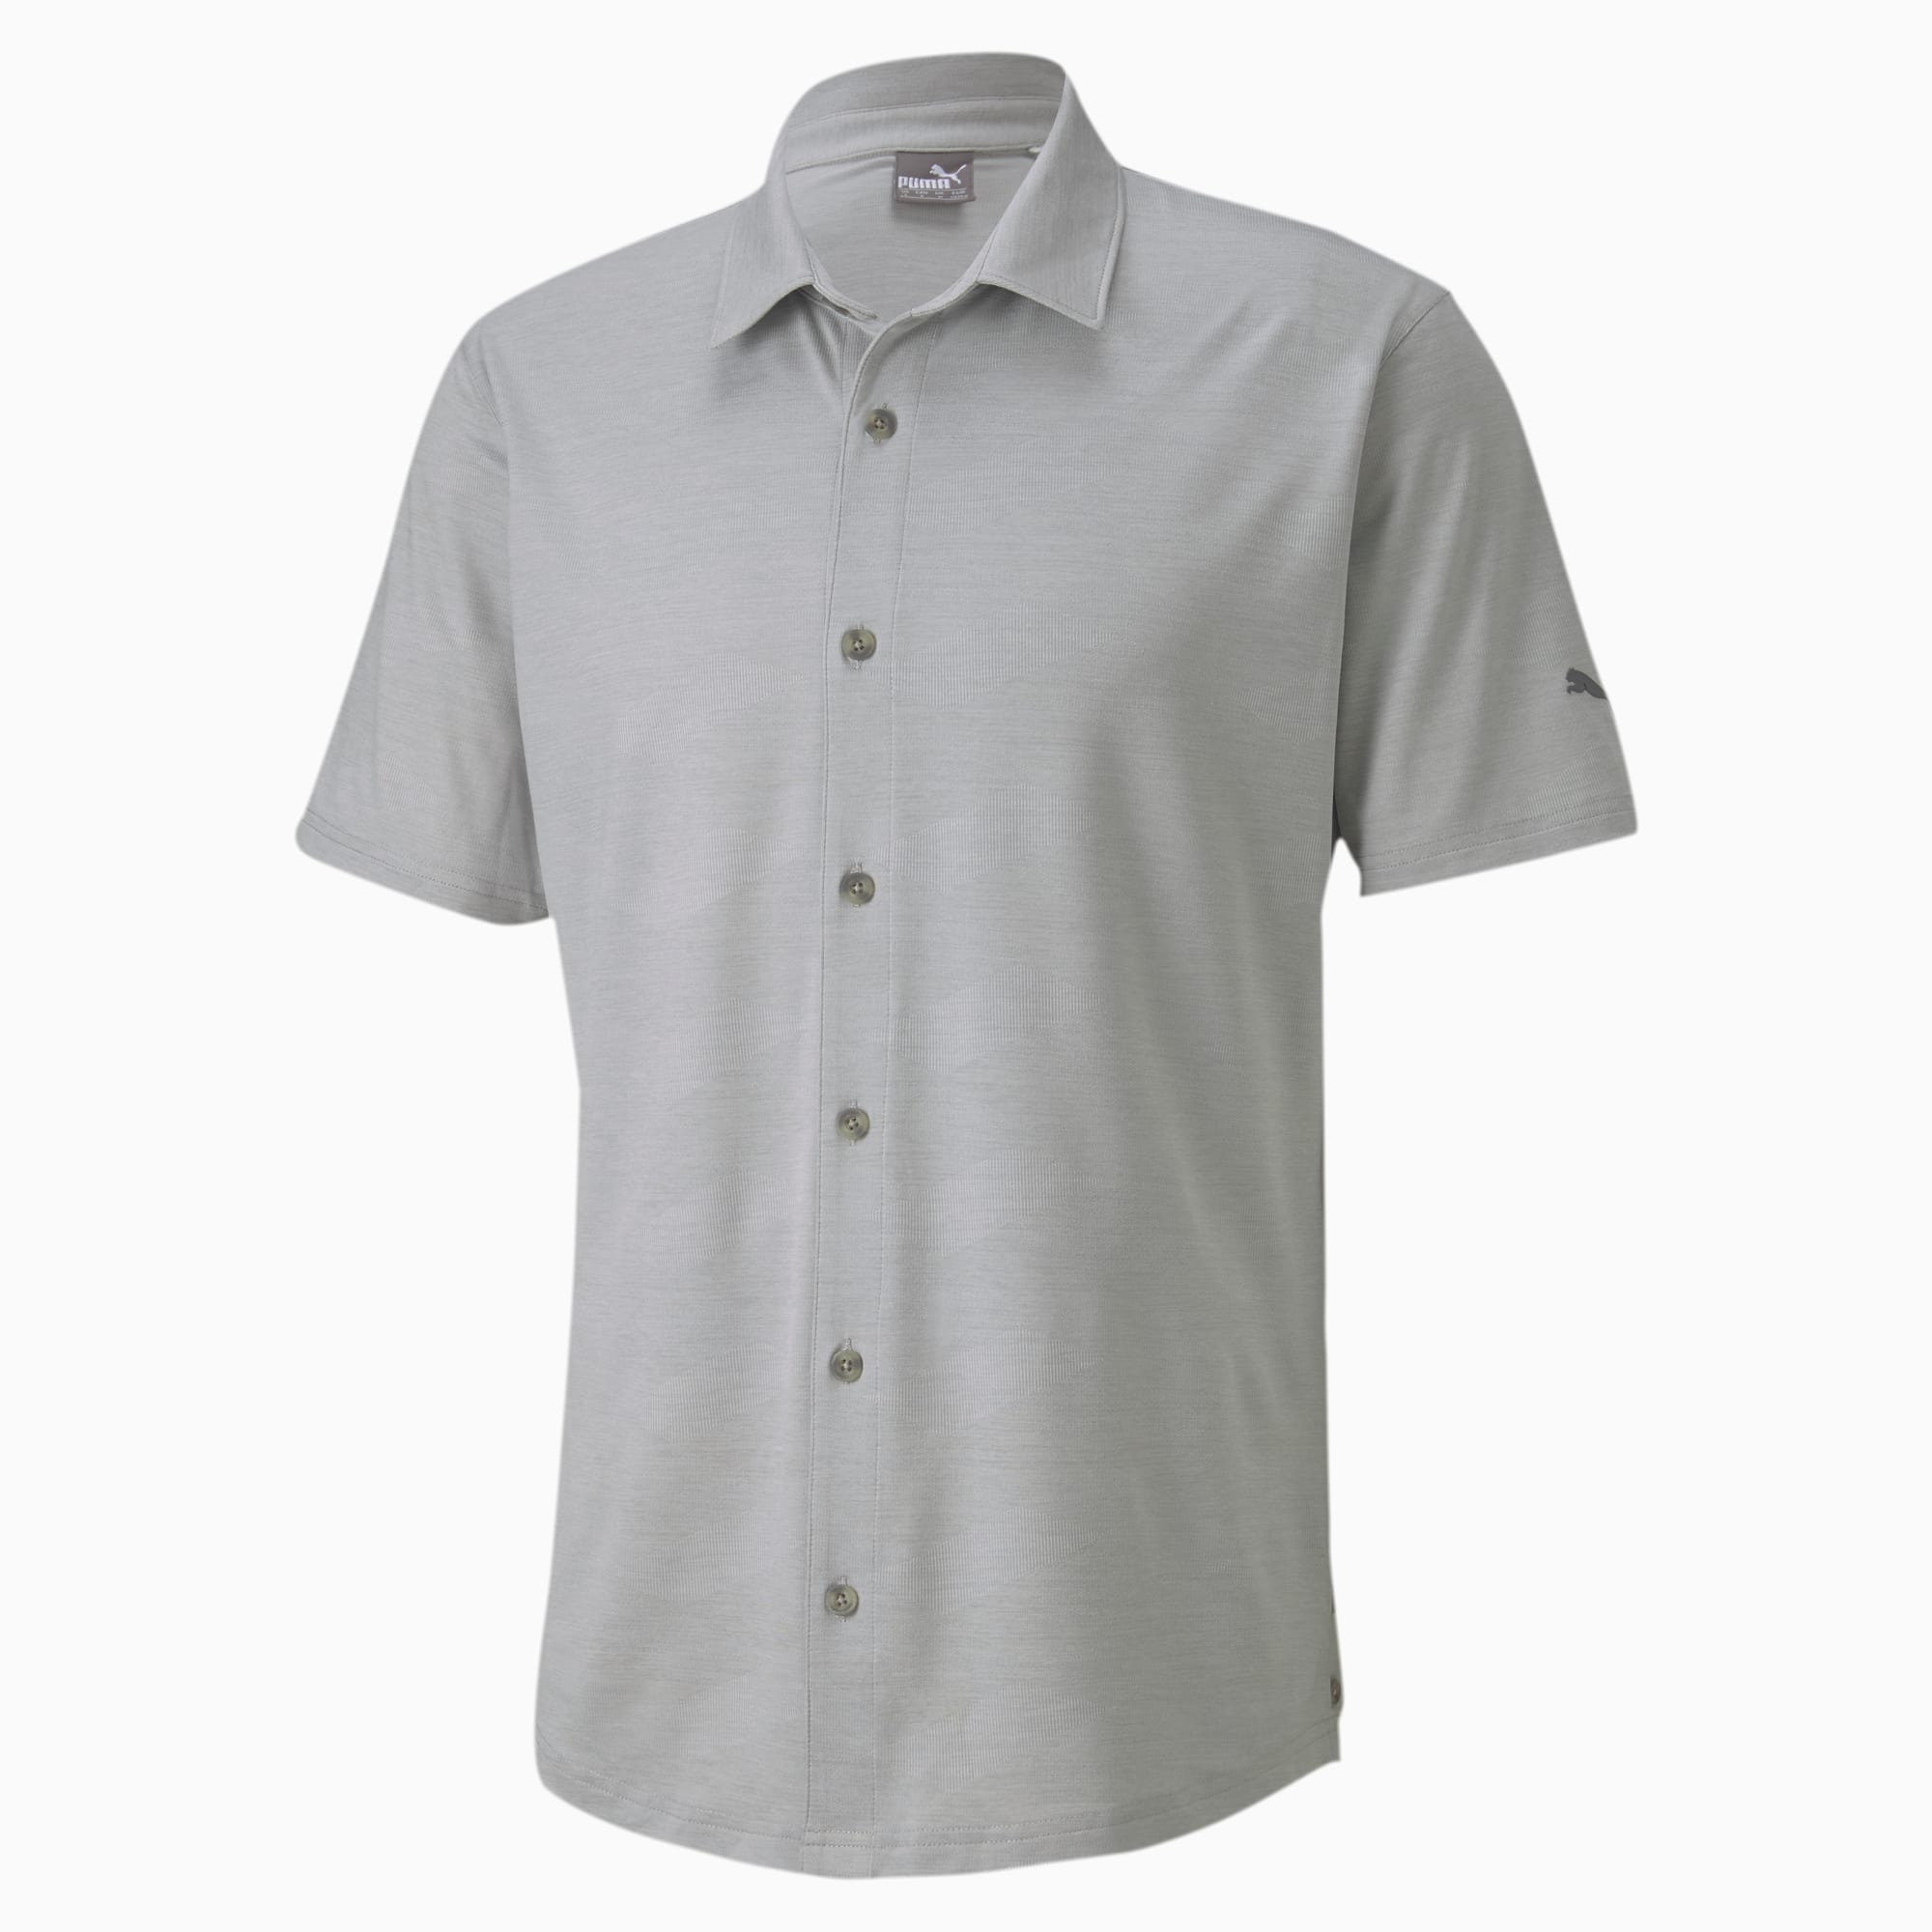 puma button up golf shirt